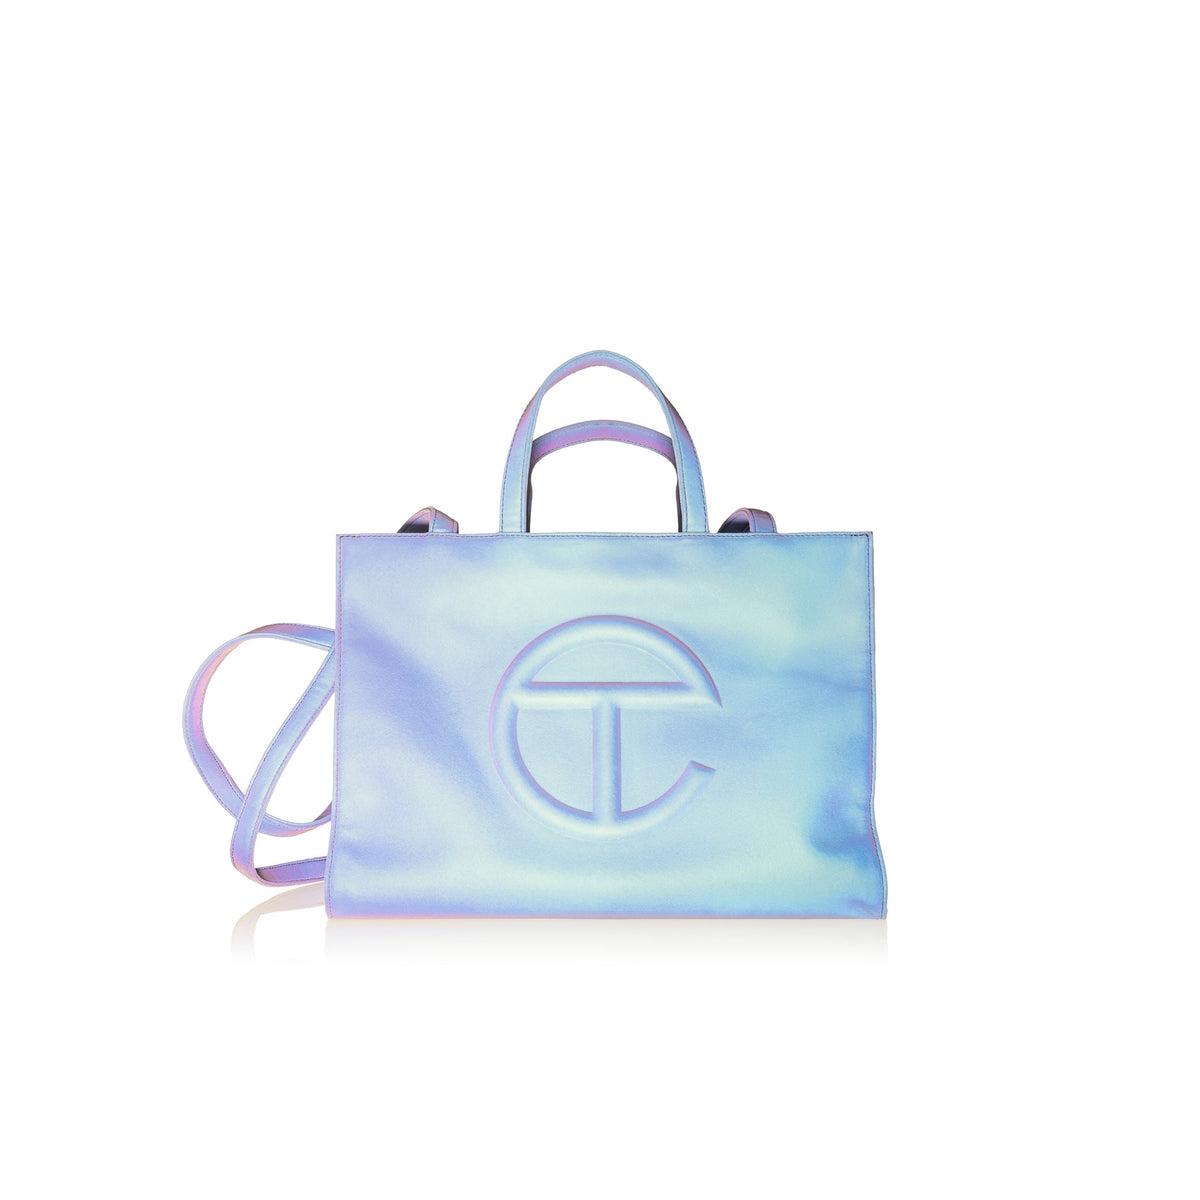 Medium Shopping Bag - Flash